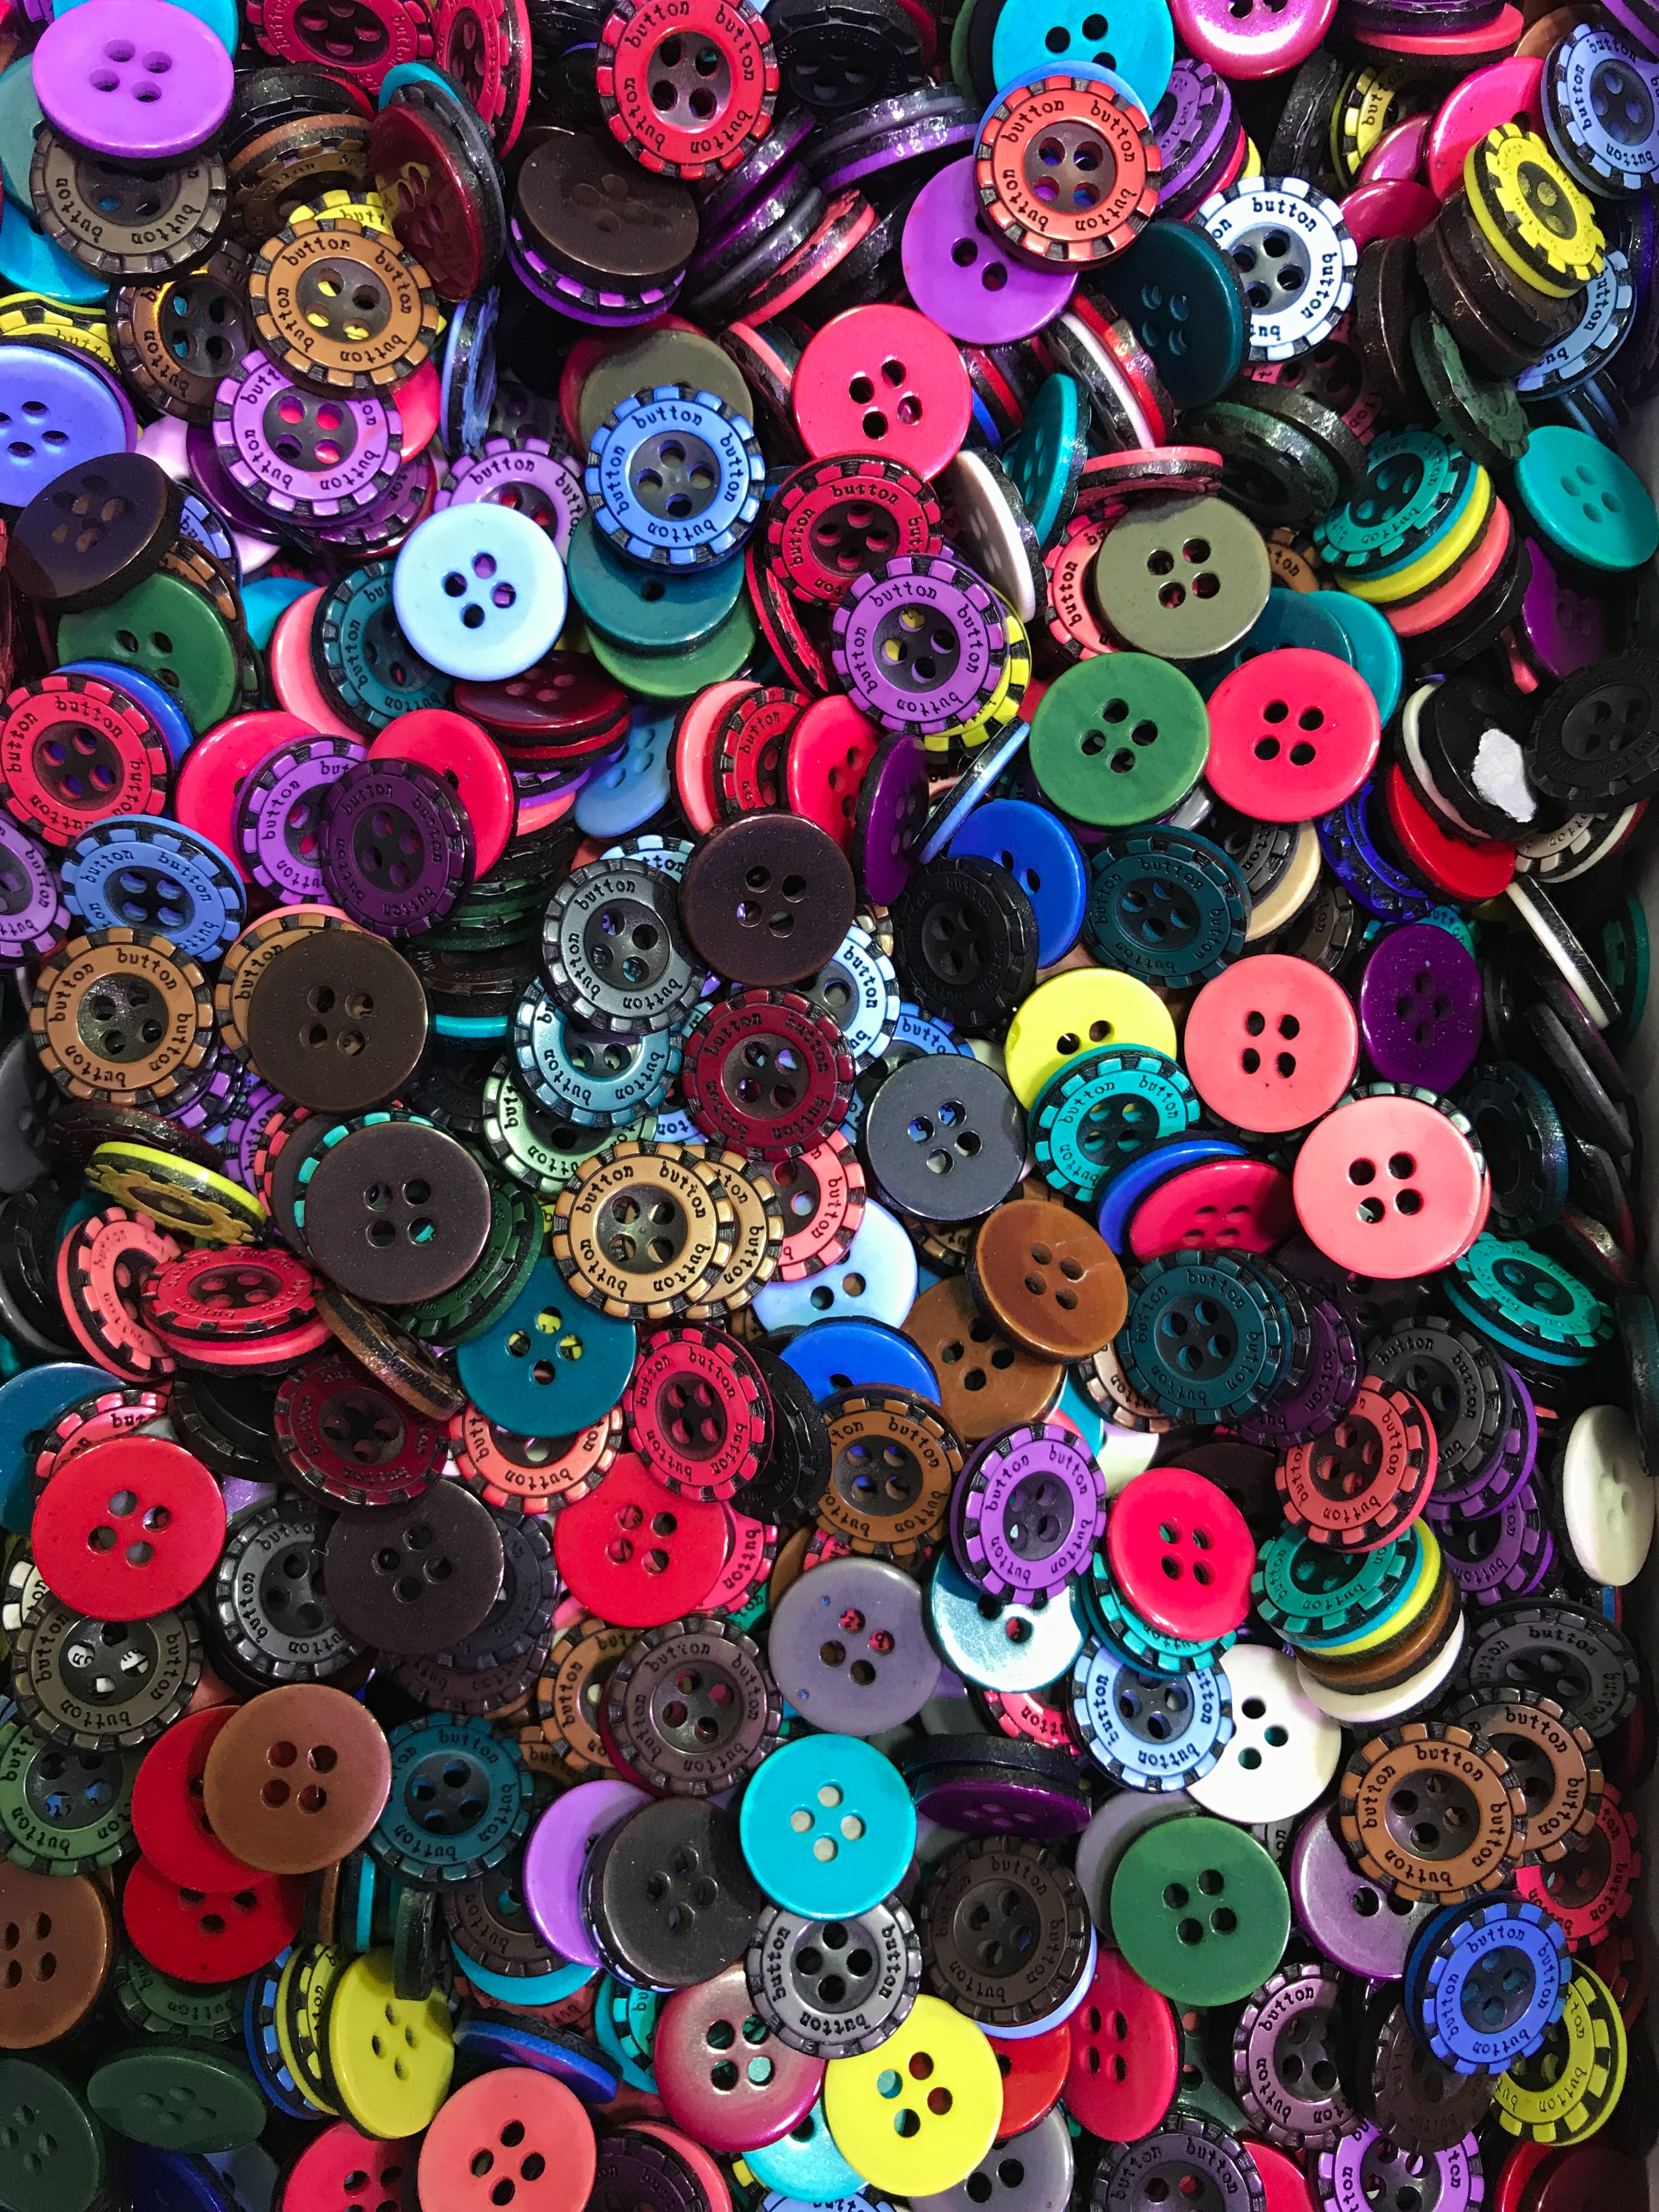 motley, texture, miscellanea, miscellaneous, multicolored, buttons, plastic